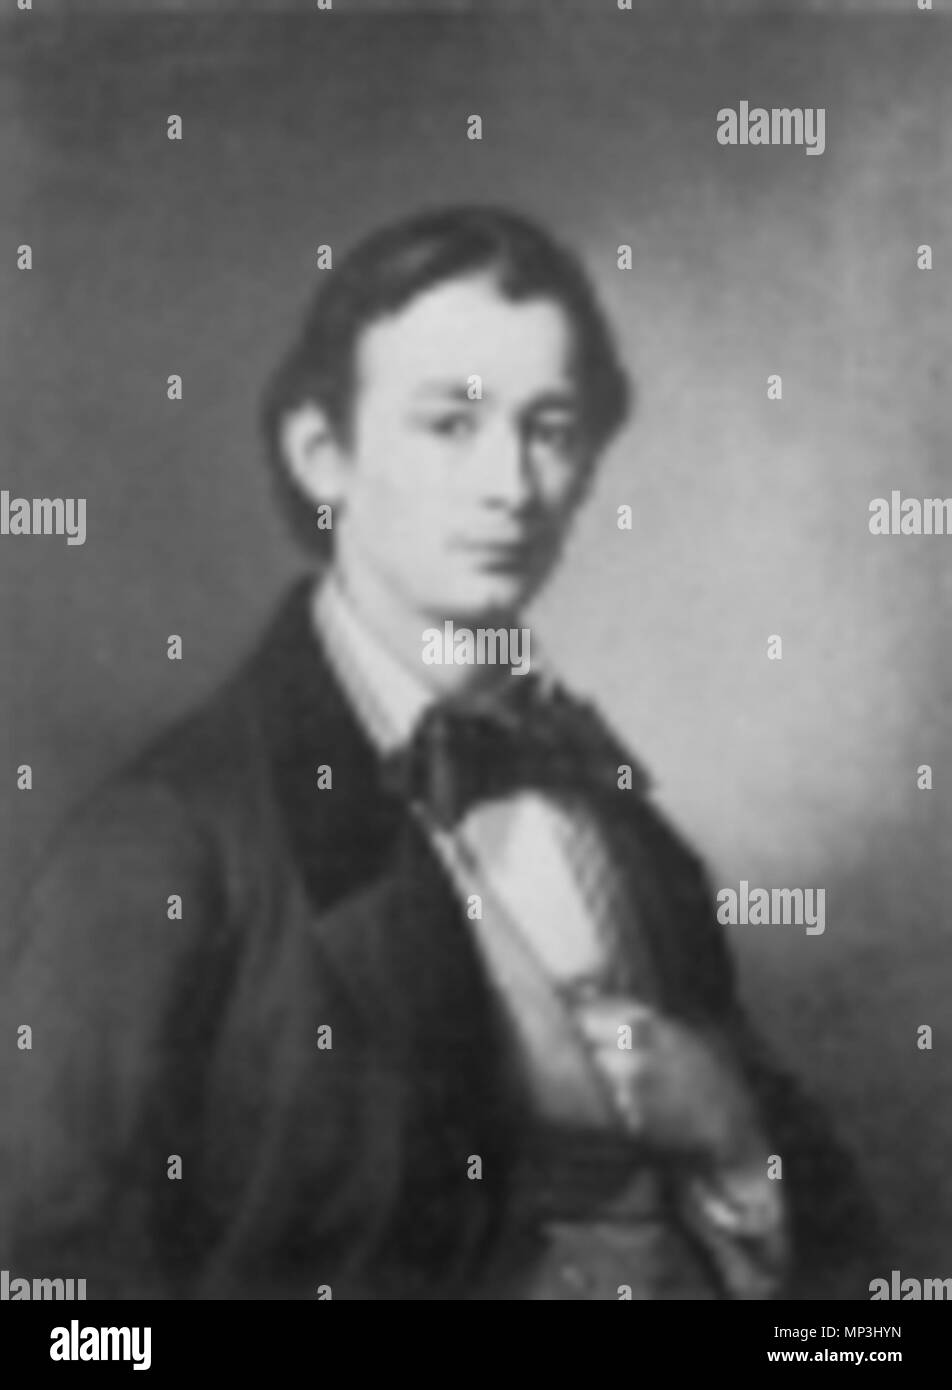 Anton weber -Fotos und -Bildmaterial in hoher Auflösung – Alamy